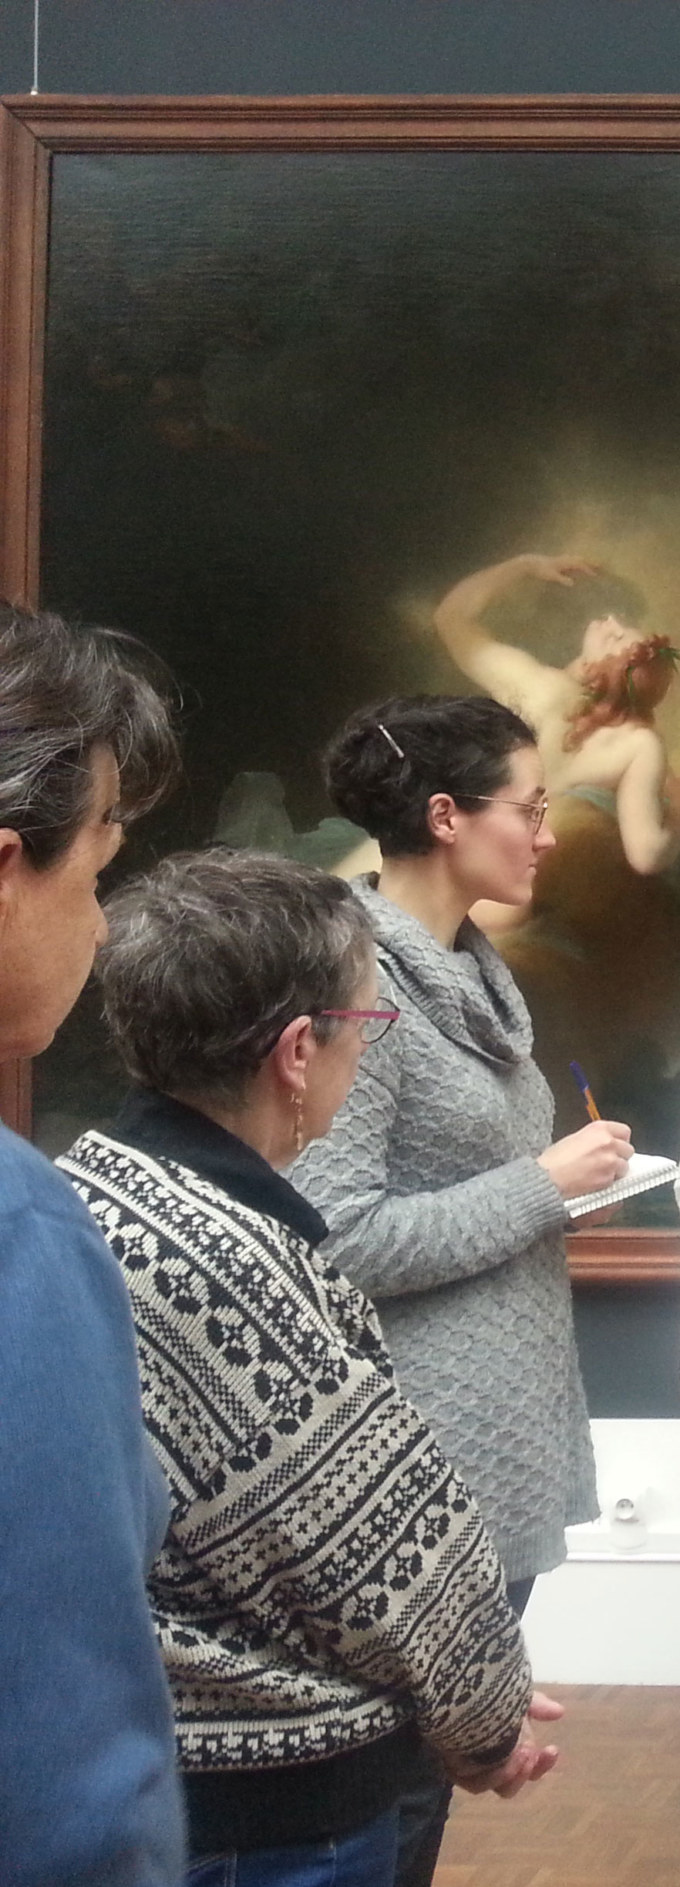 Deuxième visite du Musée des Beaux-Arts de Brest le 7 février 2019 avec la guide conférencière Élodie Poiraud dans le cadre de l'atelier [Femmes créatives, femmes libres] de Marie-Claire Raoul